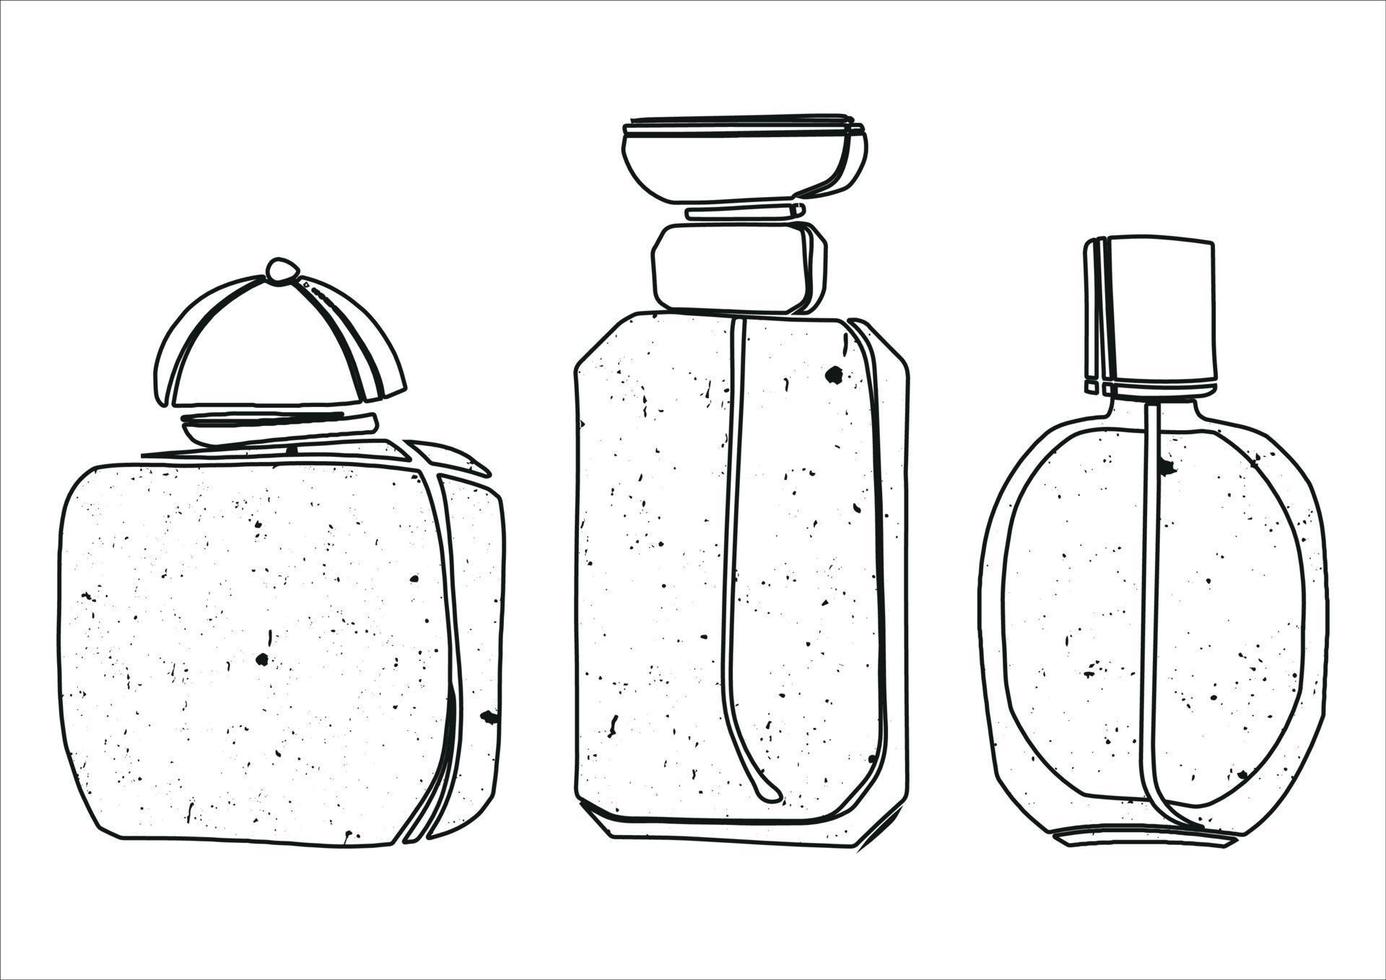 reeks van drie vector illustraties van parfum flessen. mooi illustratie in een lineair stijl met toegevoegd textuur.